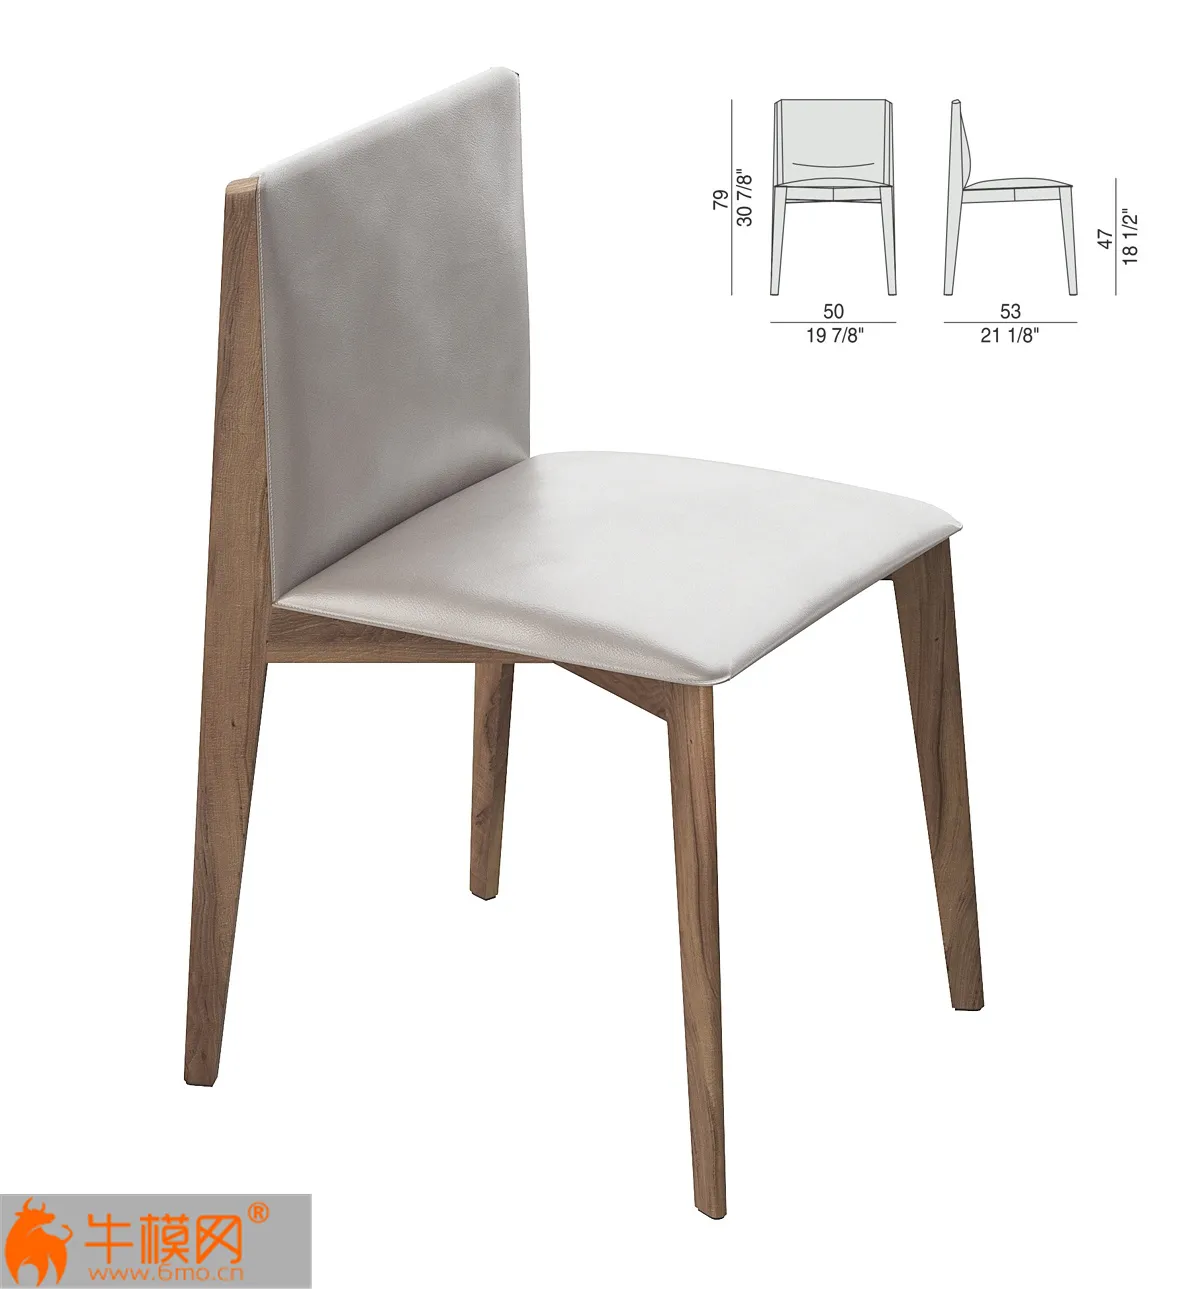 Table Chair Porada – 4239